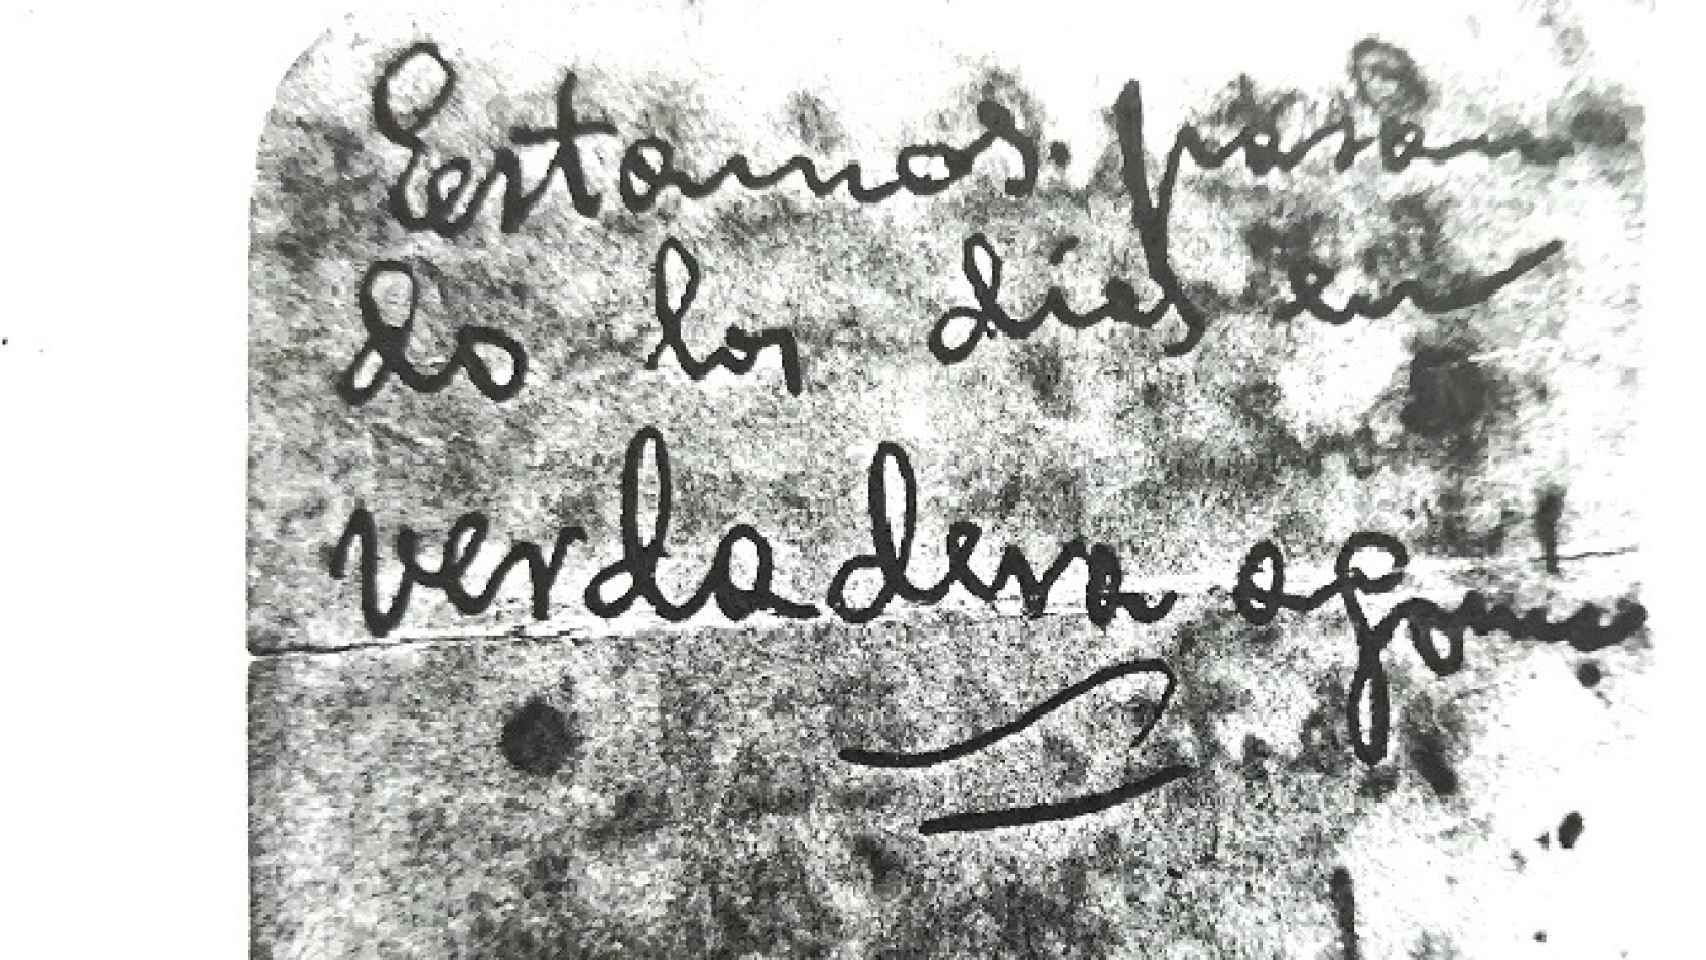 Nota de un preso (José María García) escrita desde la cárcel días antes de que lo fusilaran en La Solana en agosto de 1936.